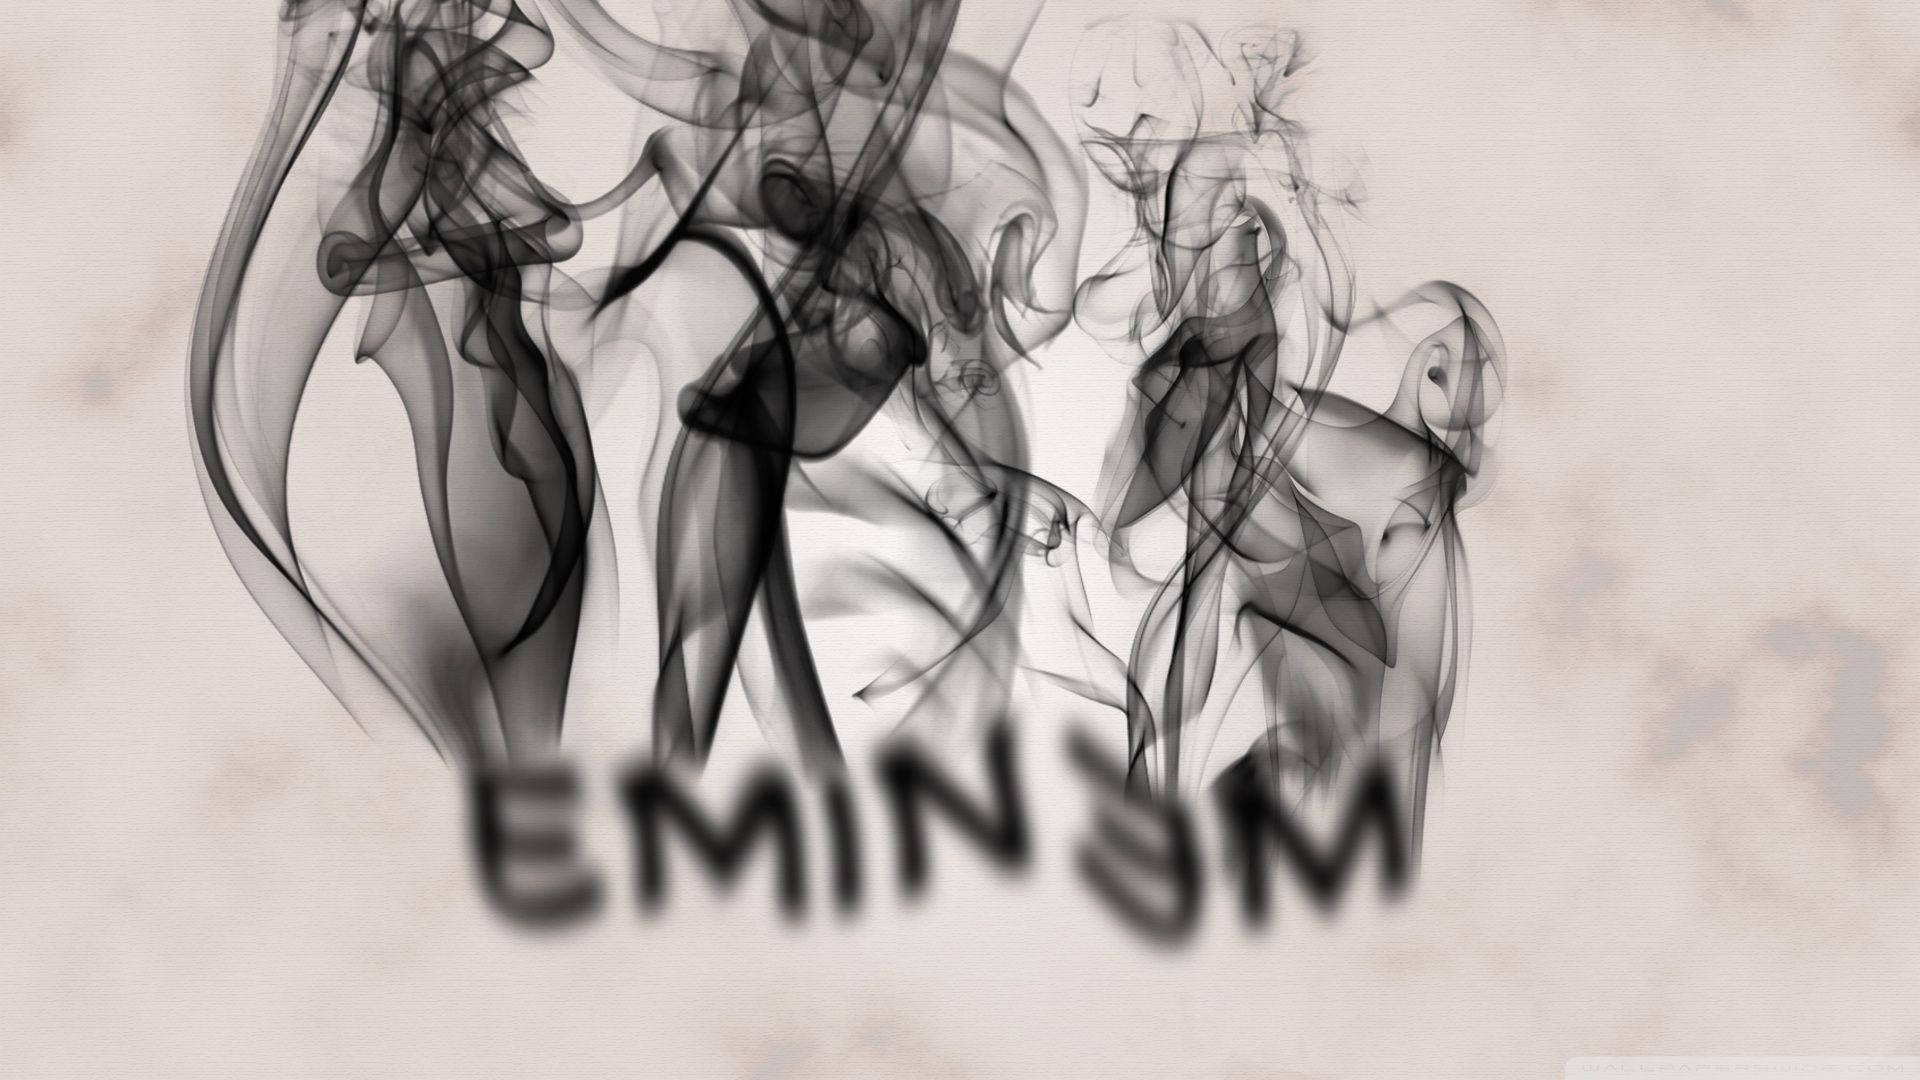 The Smoking Name Of Eminem Wallpaper